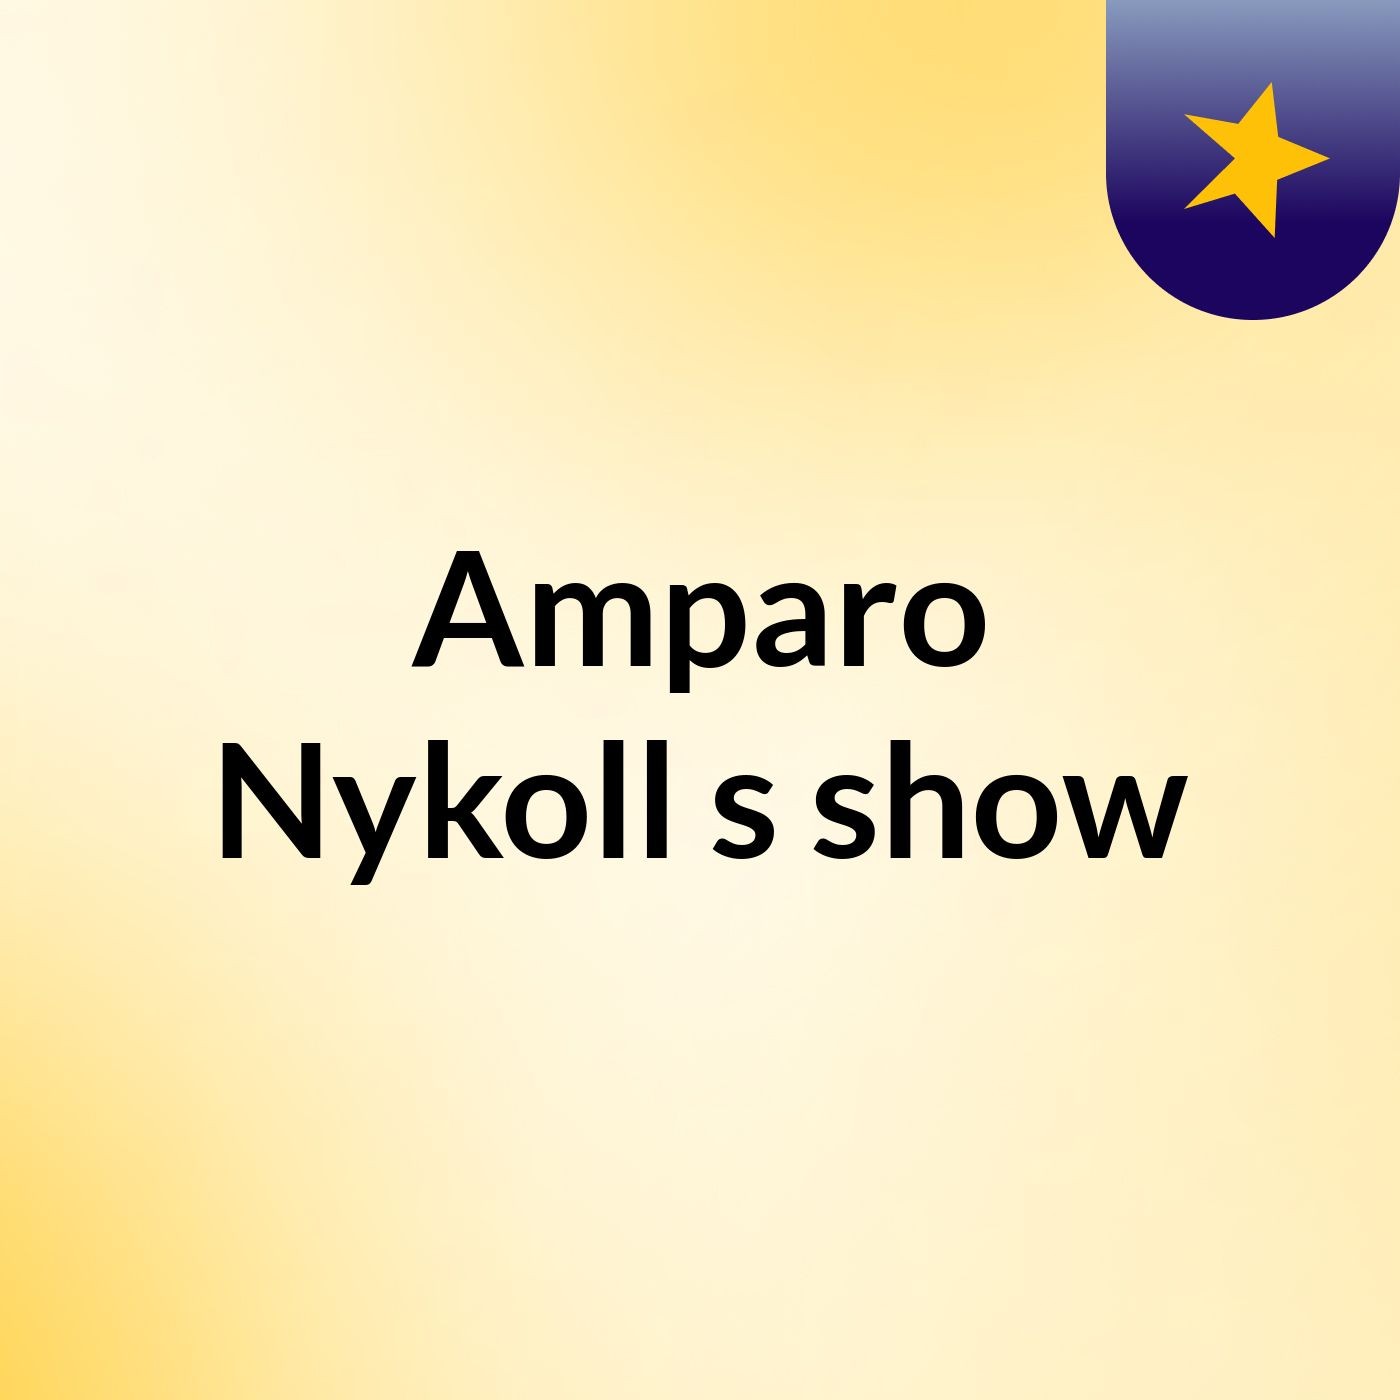 Amparo Nykoll's show